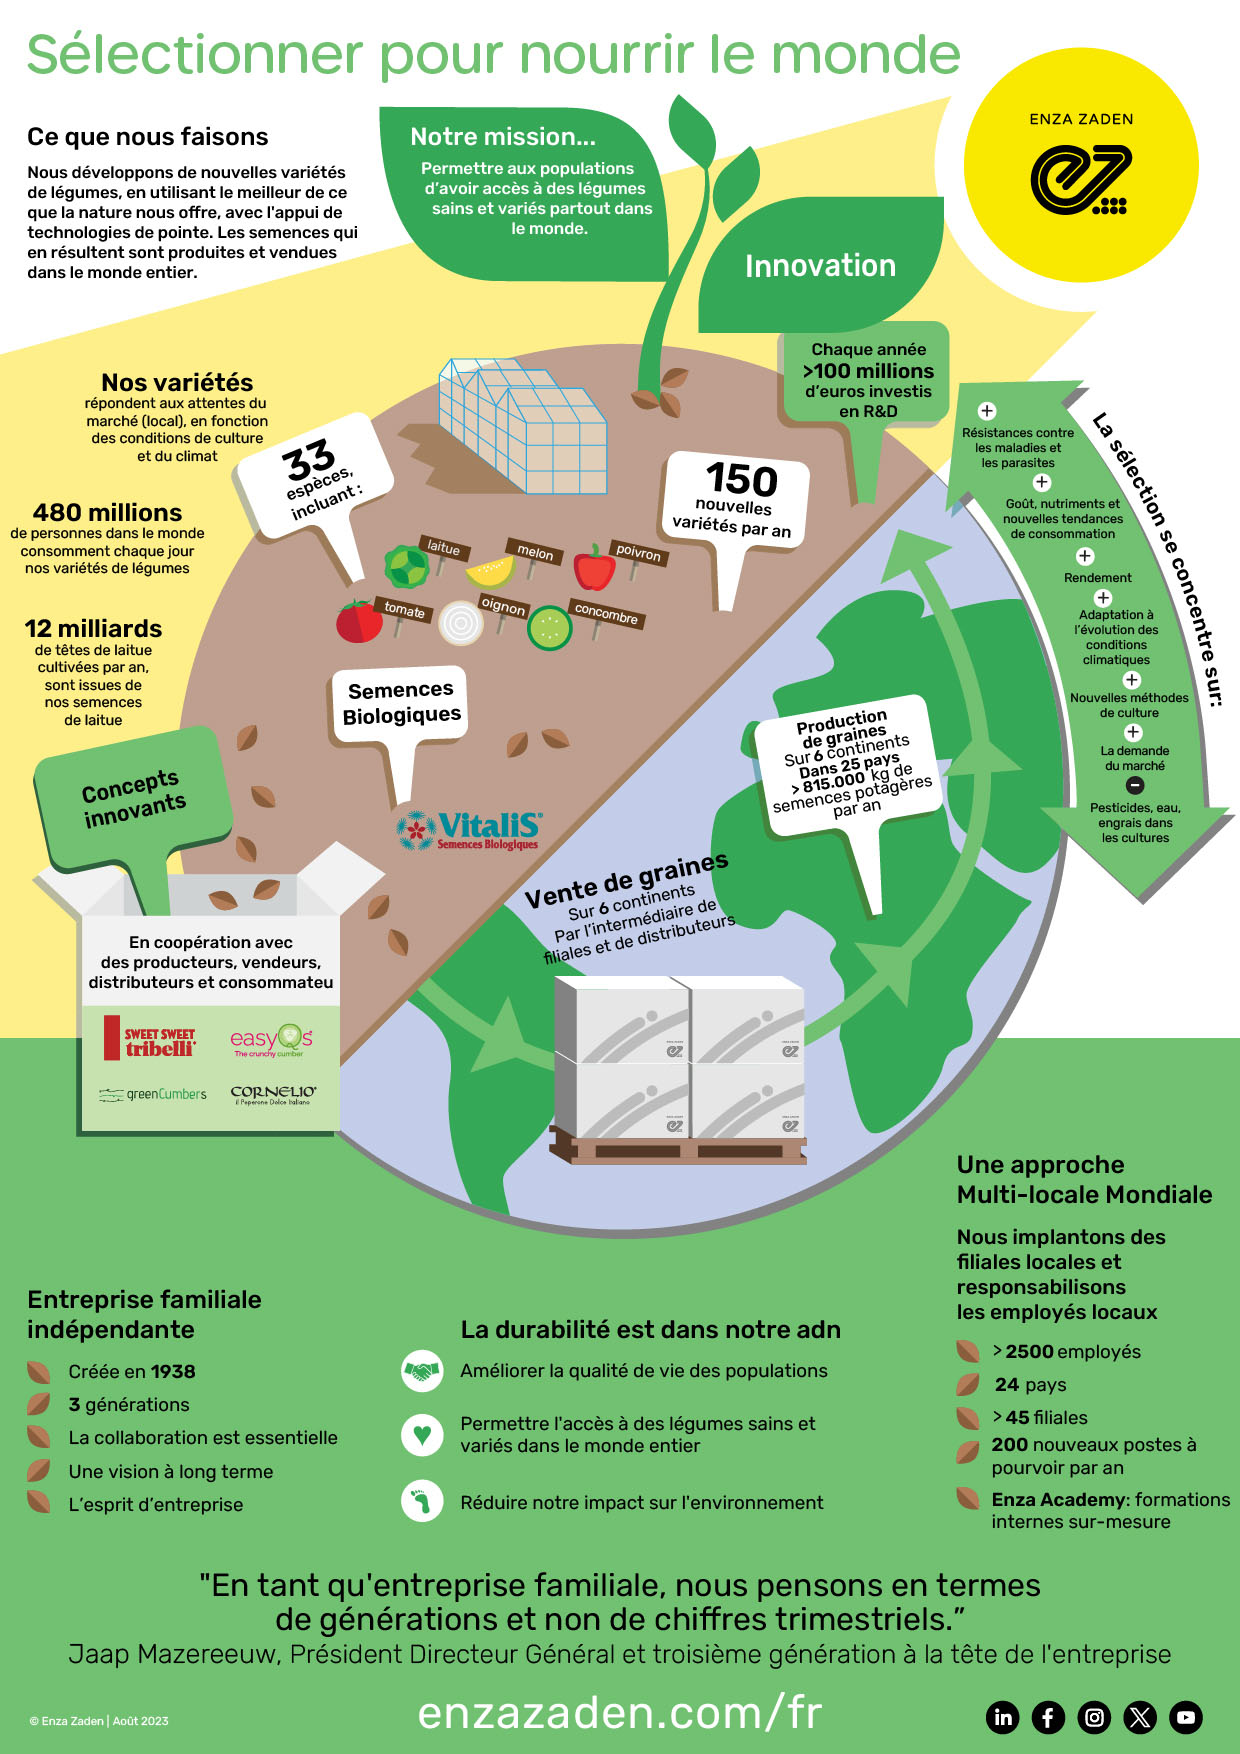 Infographique Enza Zaden - Ce que nous faisons - Selectionner pour nourir le monde